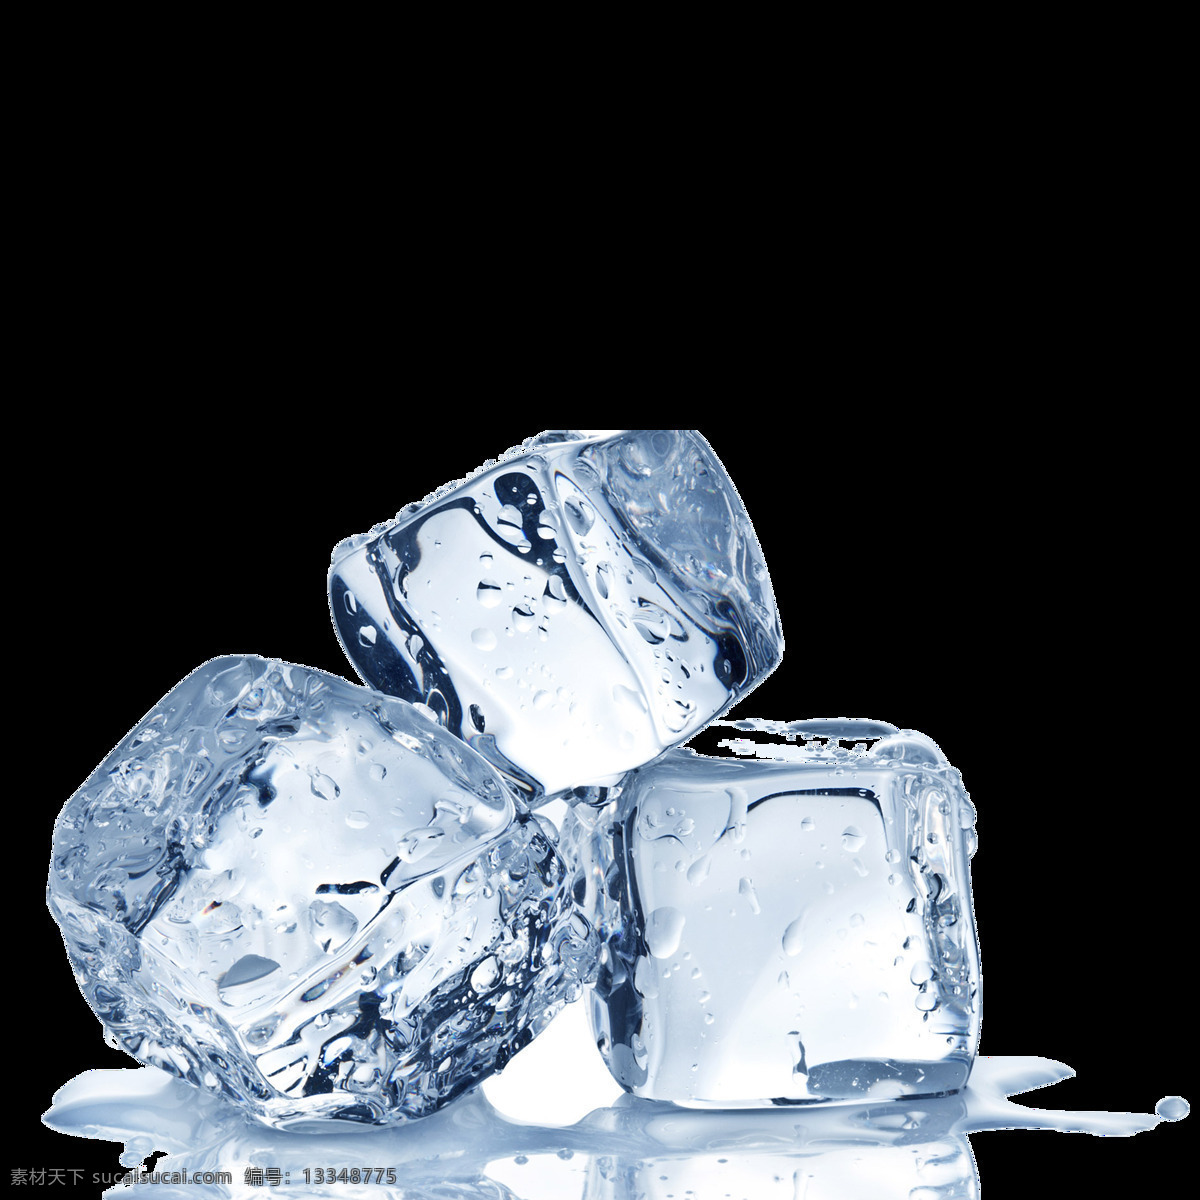 冰块 冰凉 水 固体 固态 冰点 零度 冷 透亮 透明 方块 寒冷 凝固 冷凝 凝结 金木 风火 水土 元素